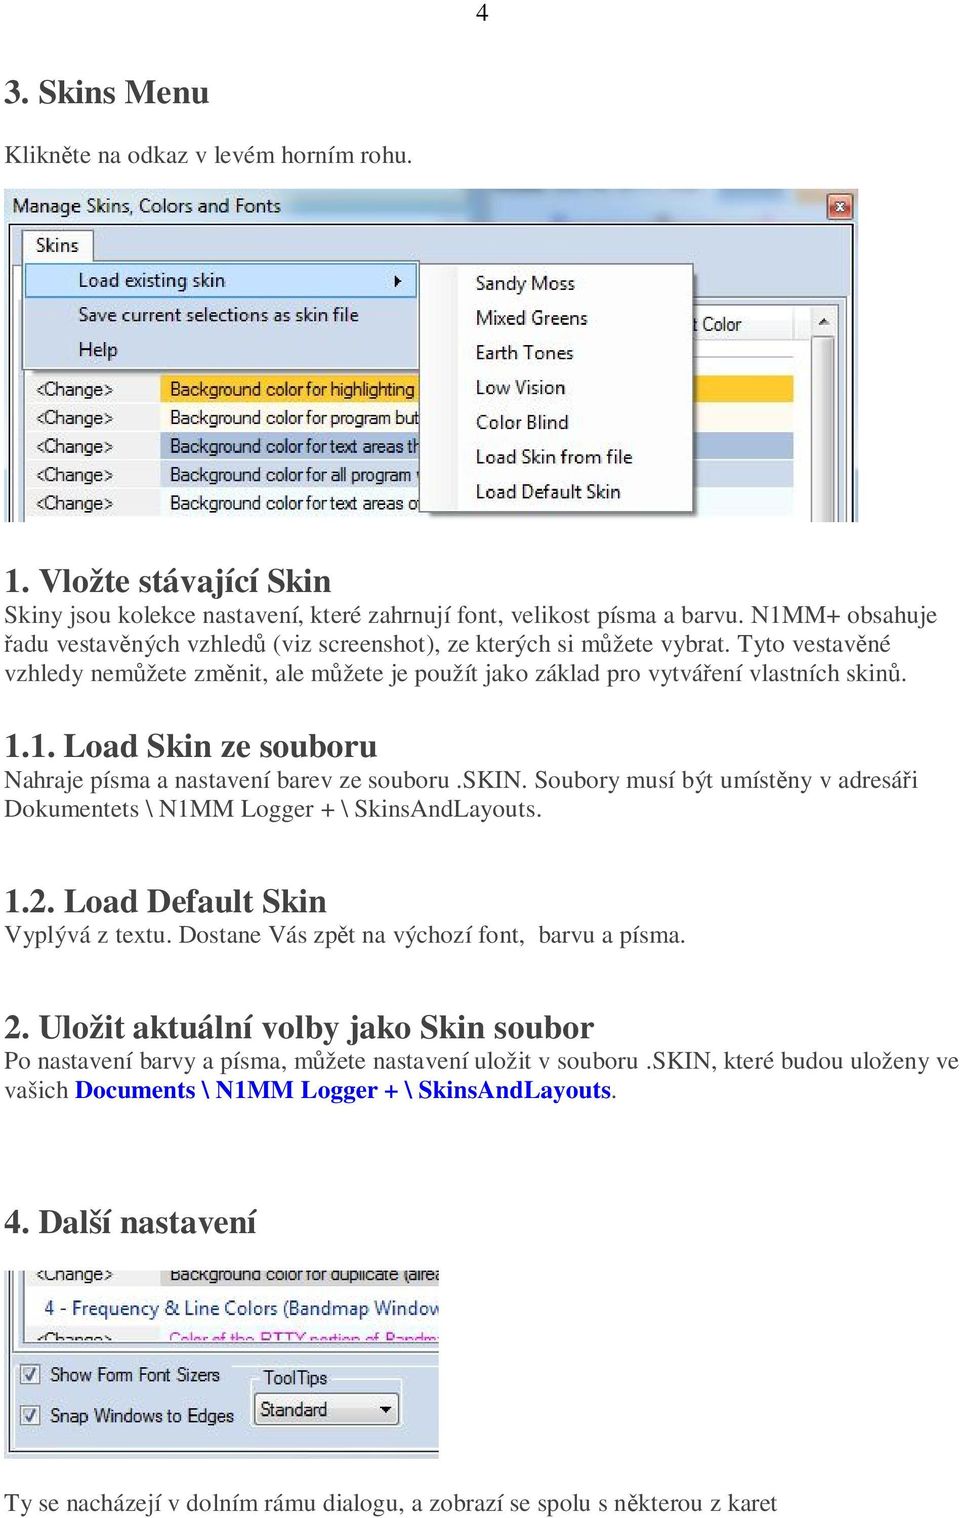 skin. Soubory musí být umístěny v adresáři Dokumentets \ N1MM Logger + \ SkinsAndLayouts. 1.2. Load Default Skin Vyplývá z textu. Dostane Vás zpět na výchozí font, barvu a písma. 2.